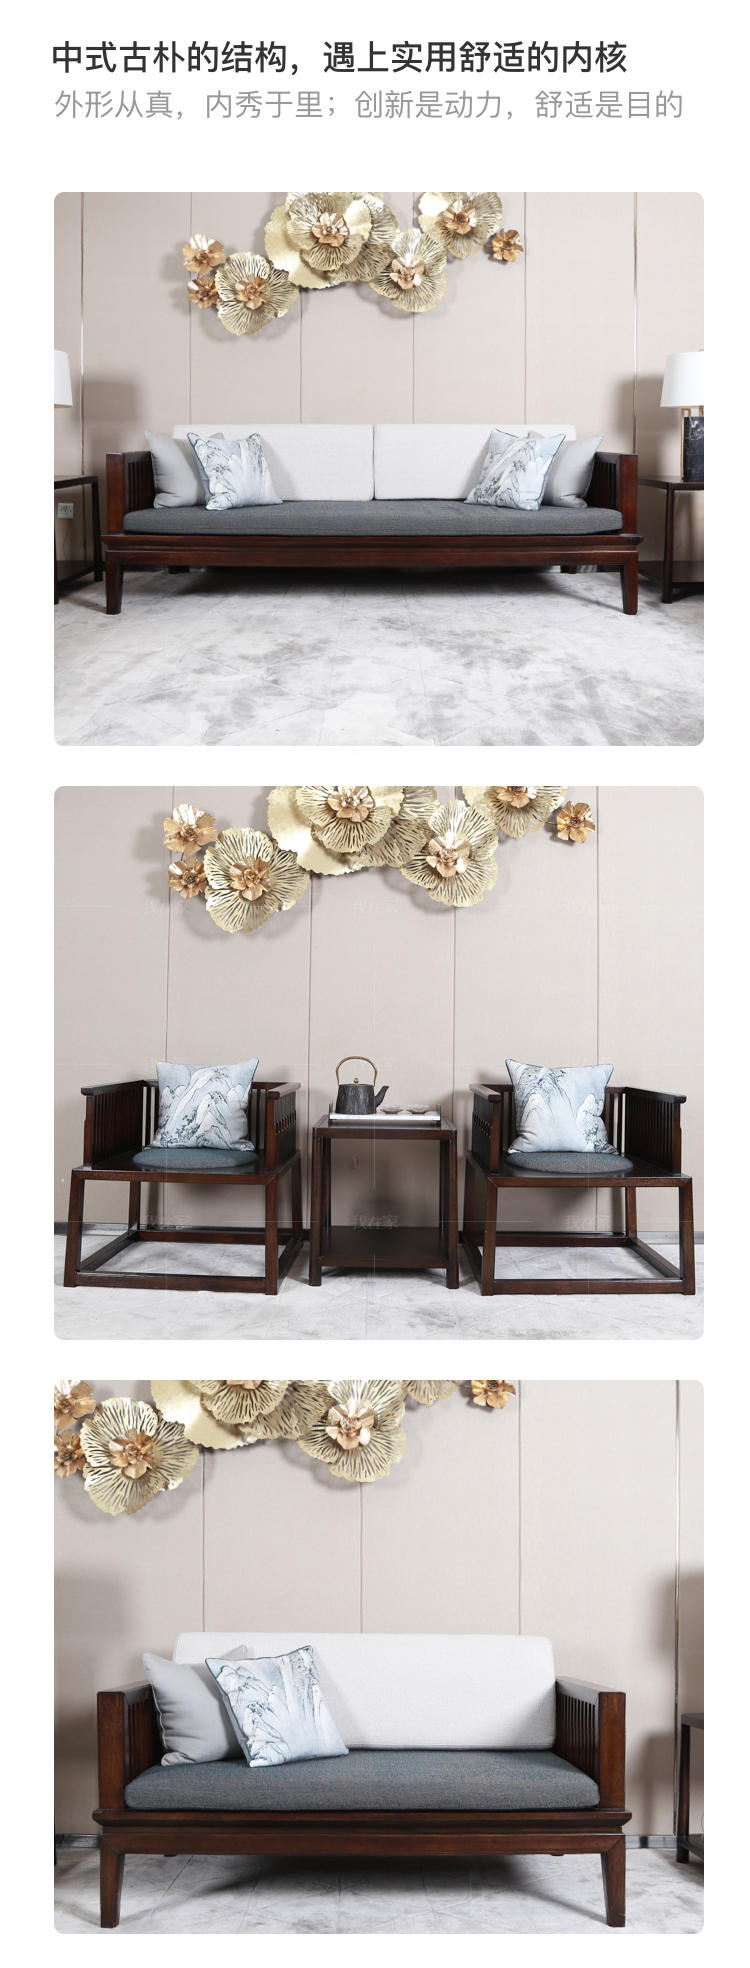 新中式风格吟风沙发的家具详细介绍